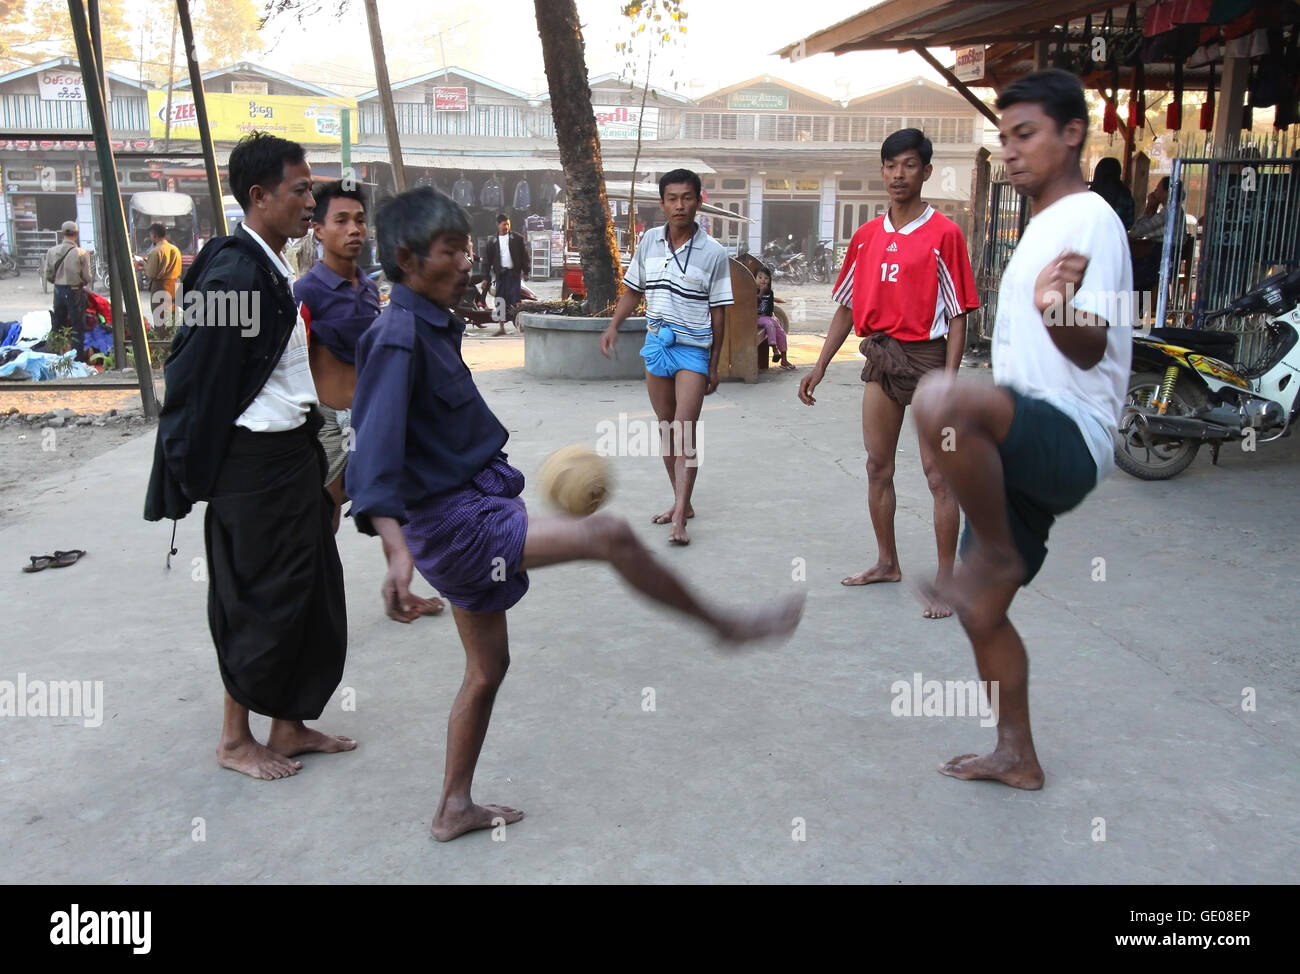 Los hombres jugando a la pelota en la calle de Myitkyina. En Birmania, el 36 por ciento de la población vive por debajo del umbral de la pobreza. Foto de stock